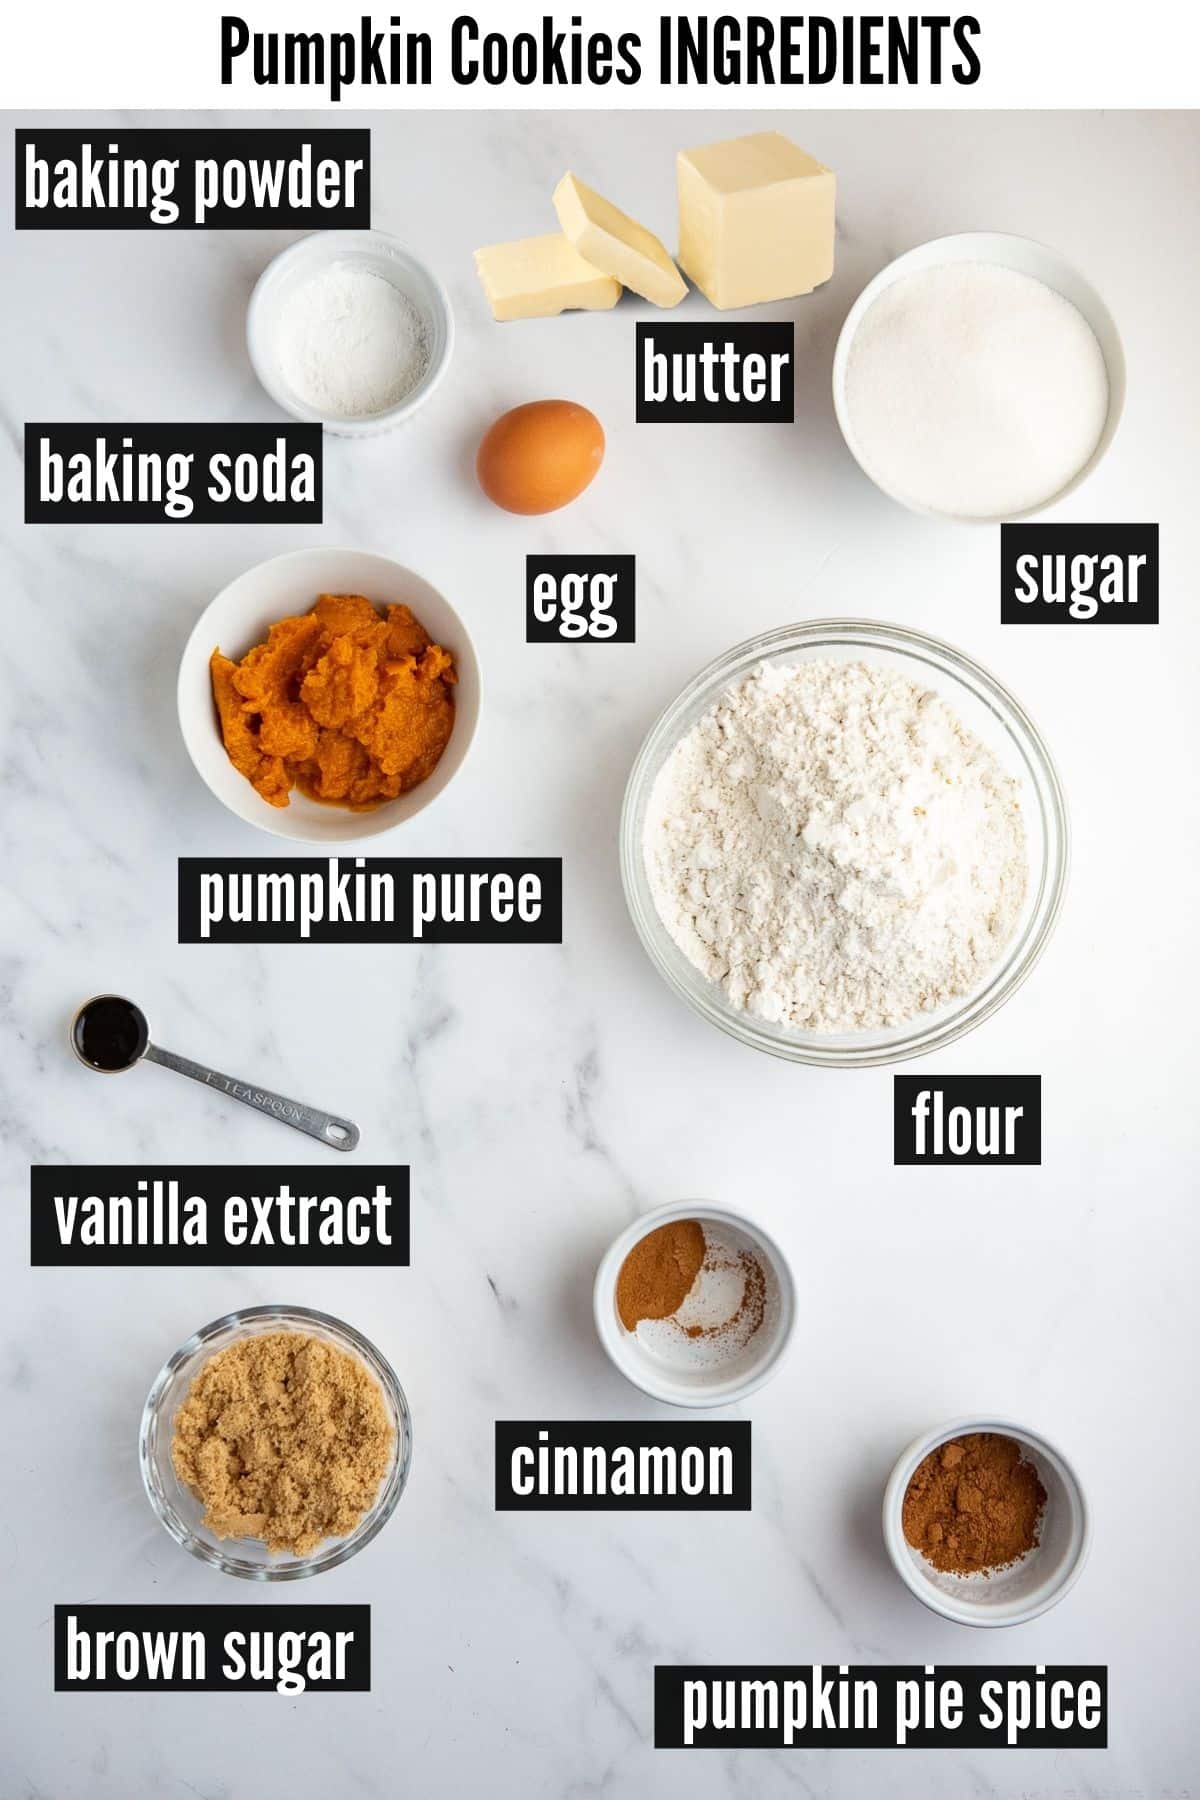 Pumpkin Cookies labelled ingredients